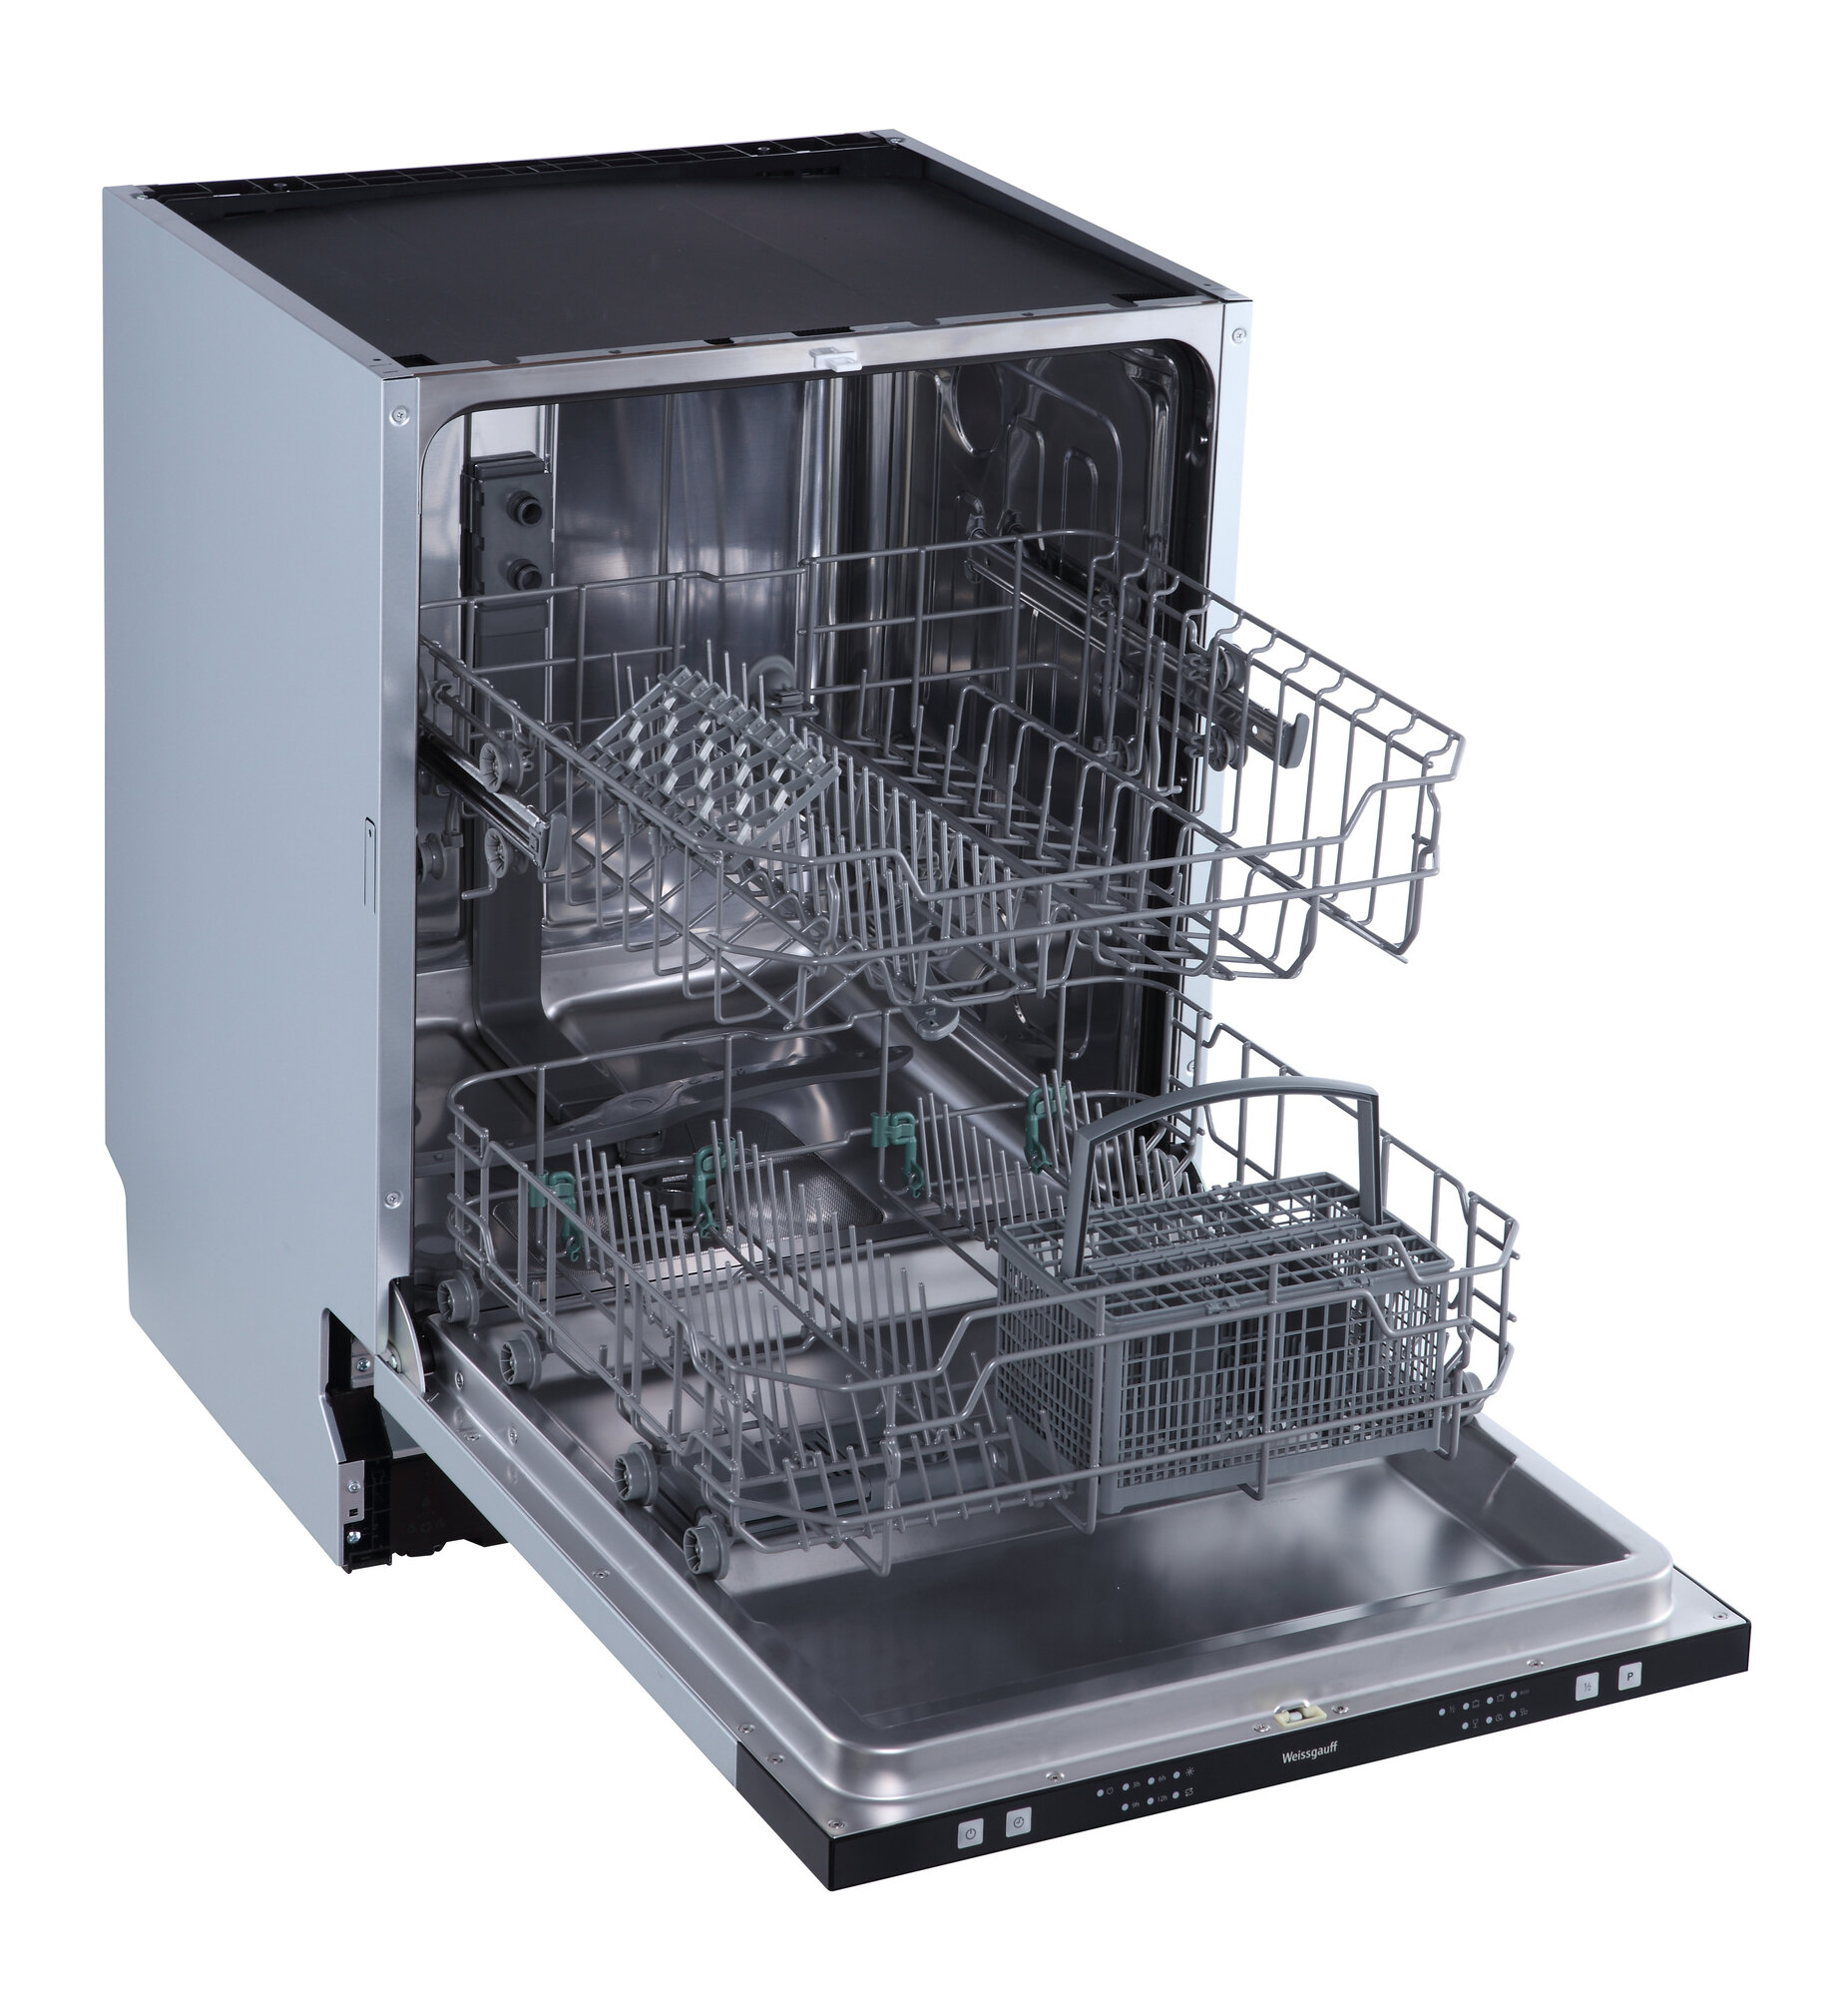 Встраиваемая посудомоечная машина Weissgauff BDW 6026, 3 года гарантии, 12 комплектов посуды, половинная загрузка, 6 программ, быстрый режим, универсальная программа, экономичная программа, таймер, дозагрузка посуды, электронное управление